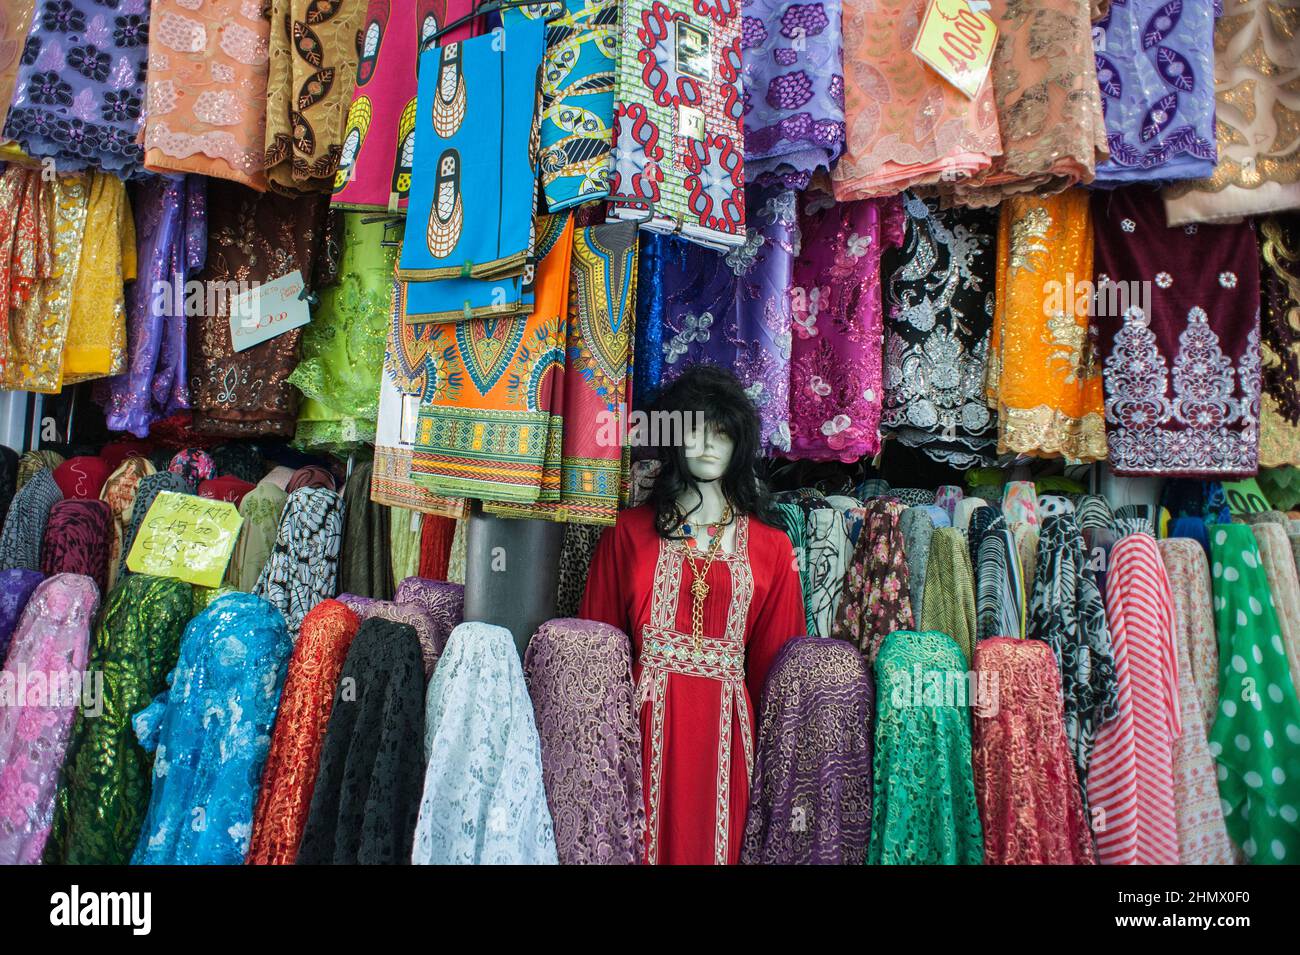 Tienda de ropa india fotografías imágenes de resolución - Alamy